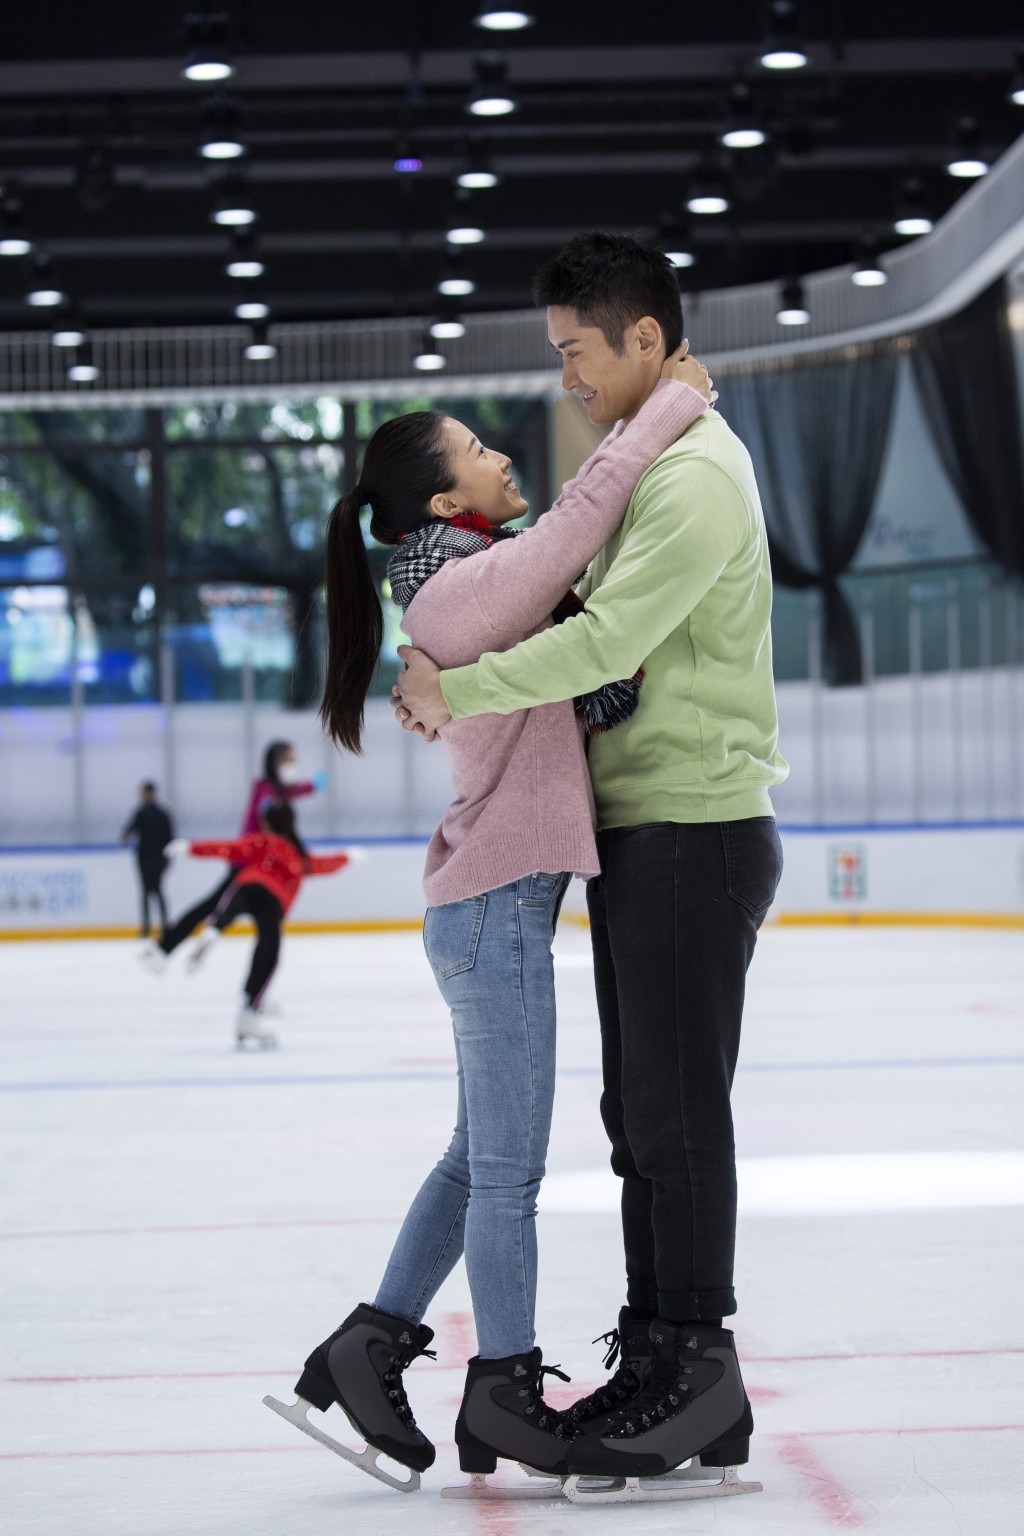 即日至2月14日於愉景灣溜冰場二人同行溜冰，即送朱古力一份，數量有限，送完即止。